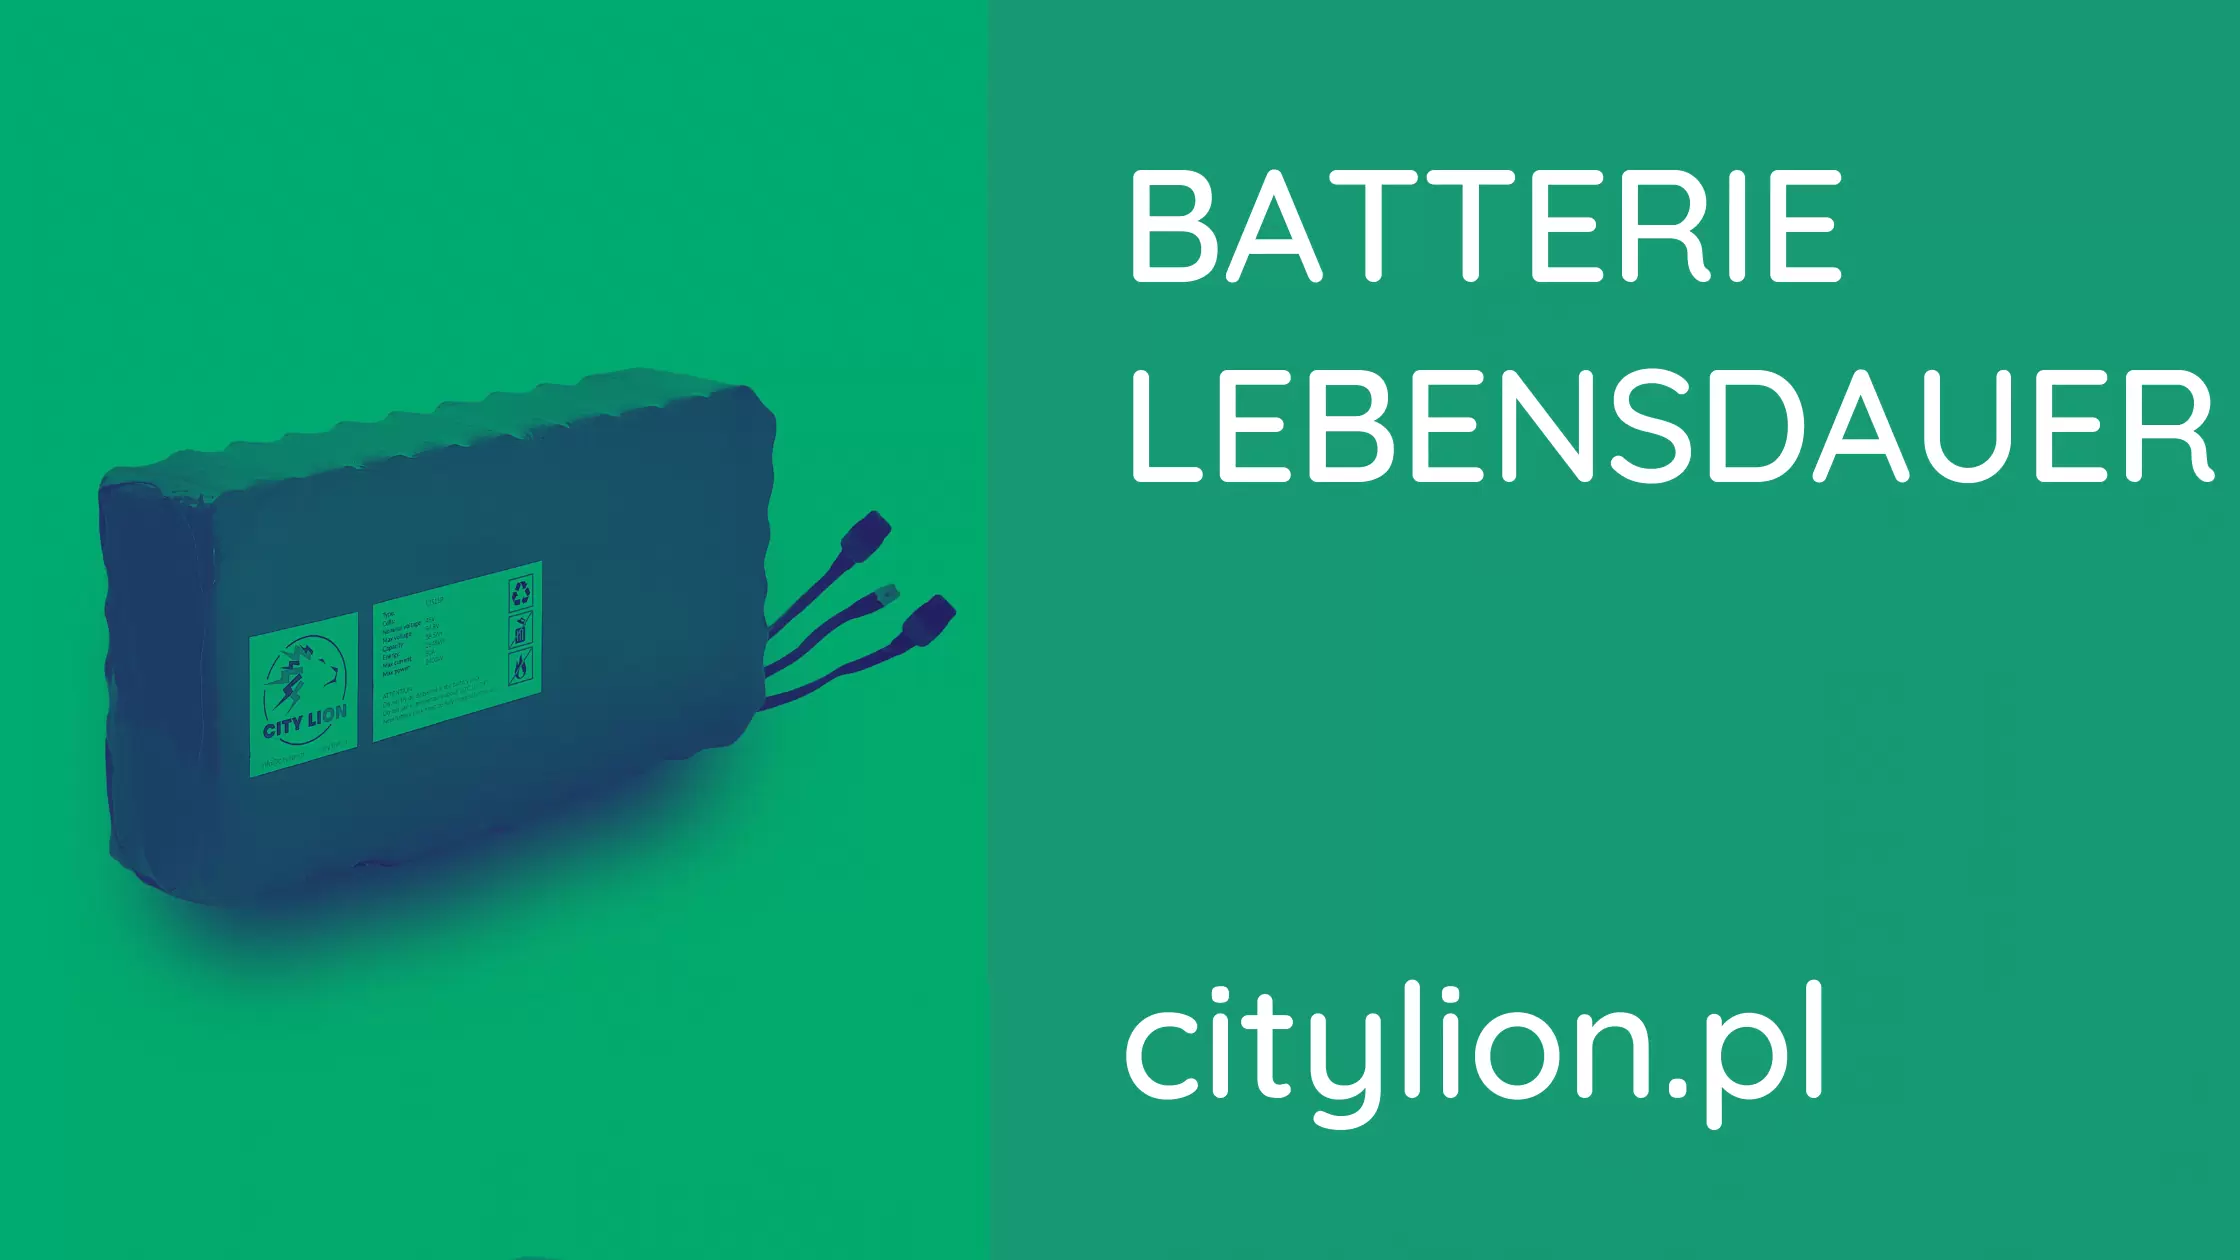 Wie pflegt man die Batterie des Elektrorollers?